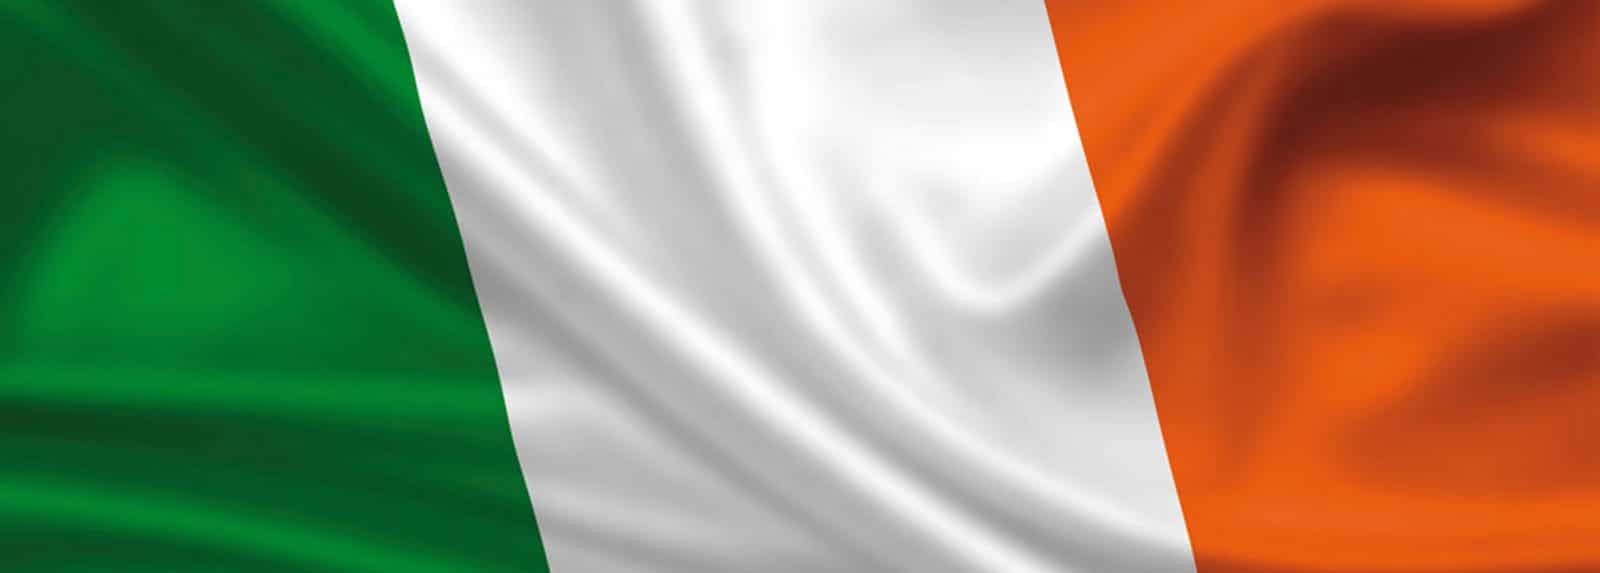 irishnationalflag copy 1